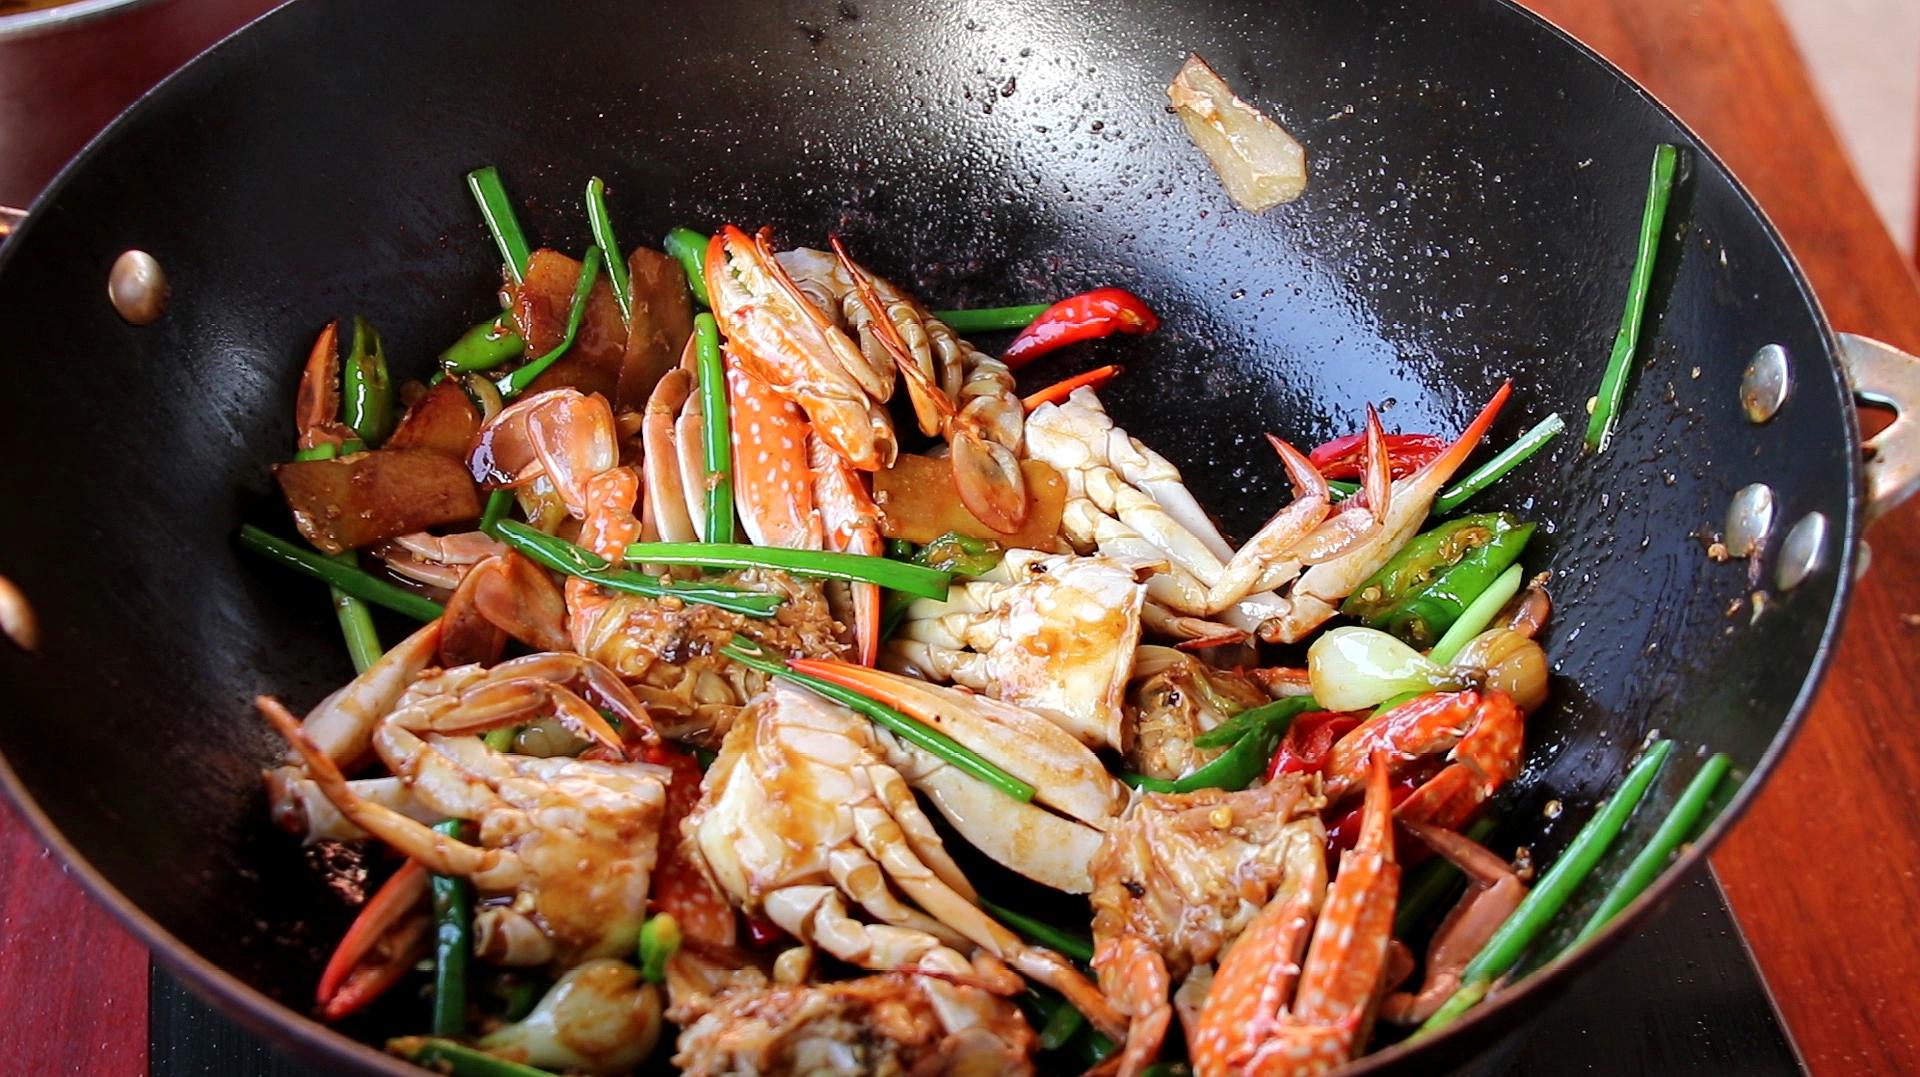 螃蟹,葱,姜煎香,然后下入料酒,水,水煮熟,最后用盐,生抽,蚝油,辣椒